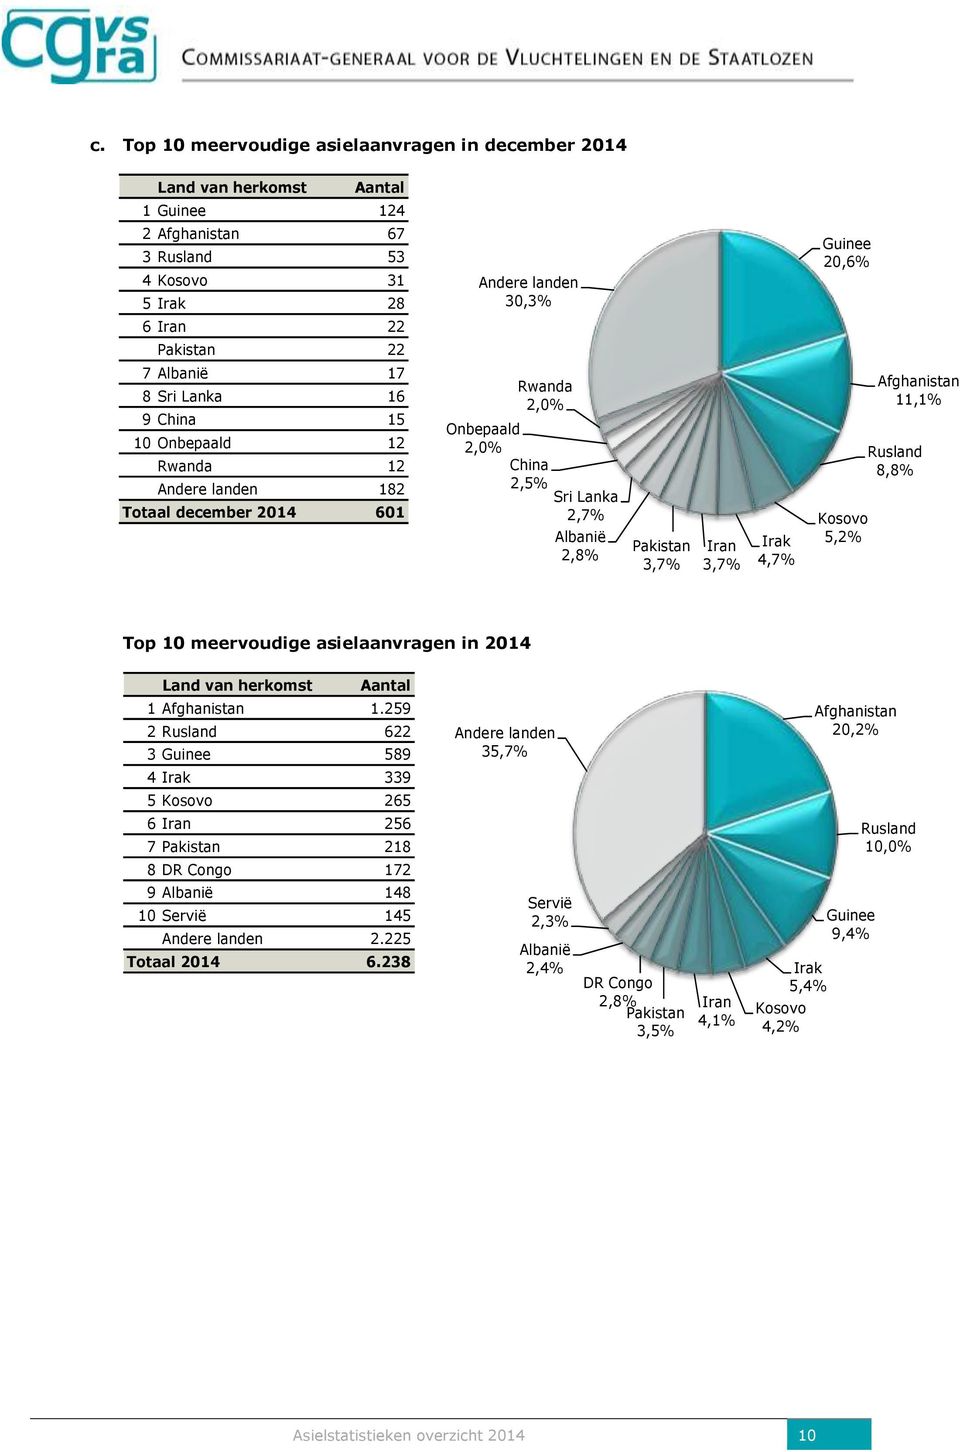 Guinee 20,6% Kosovo 5,2% Afghanistan 11,1% Rusland 8,8% Top 10 meervoudige asielaanvragen in 2014 Land van herkomst Aantal 1 Afghanistan 1.